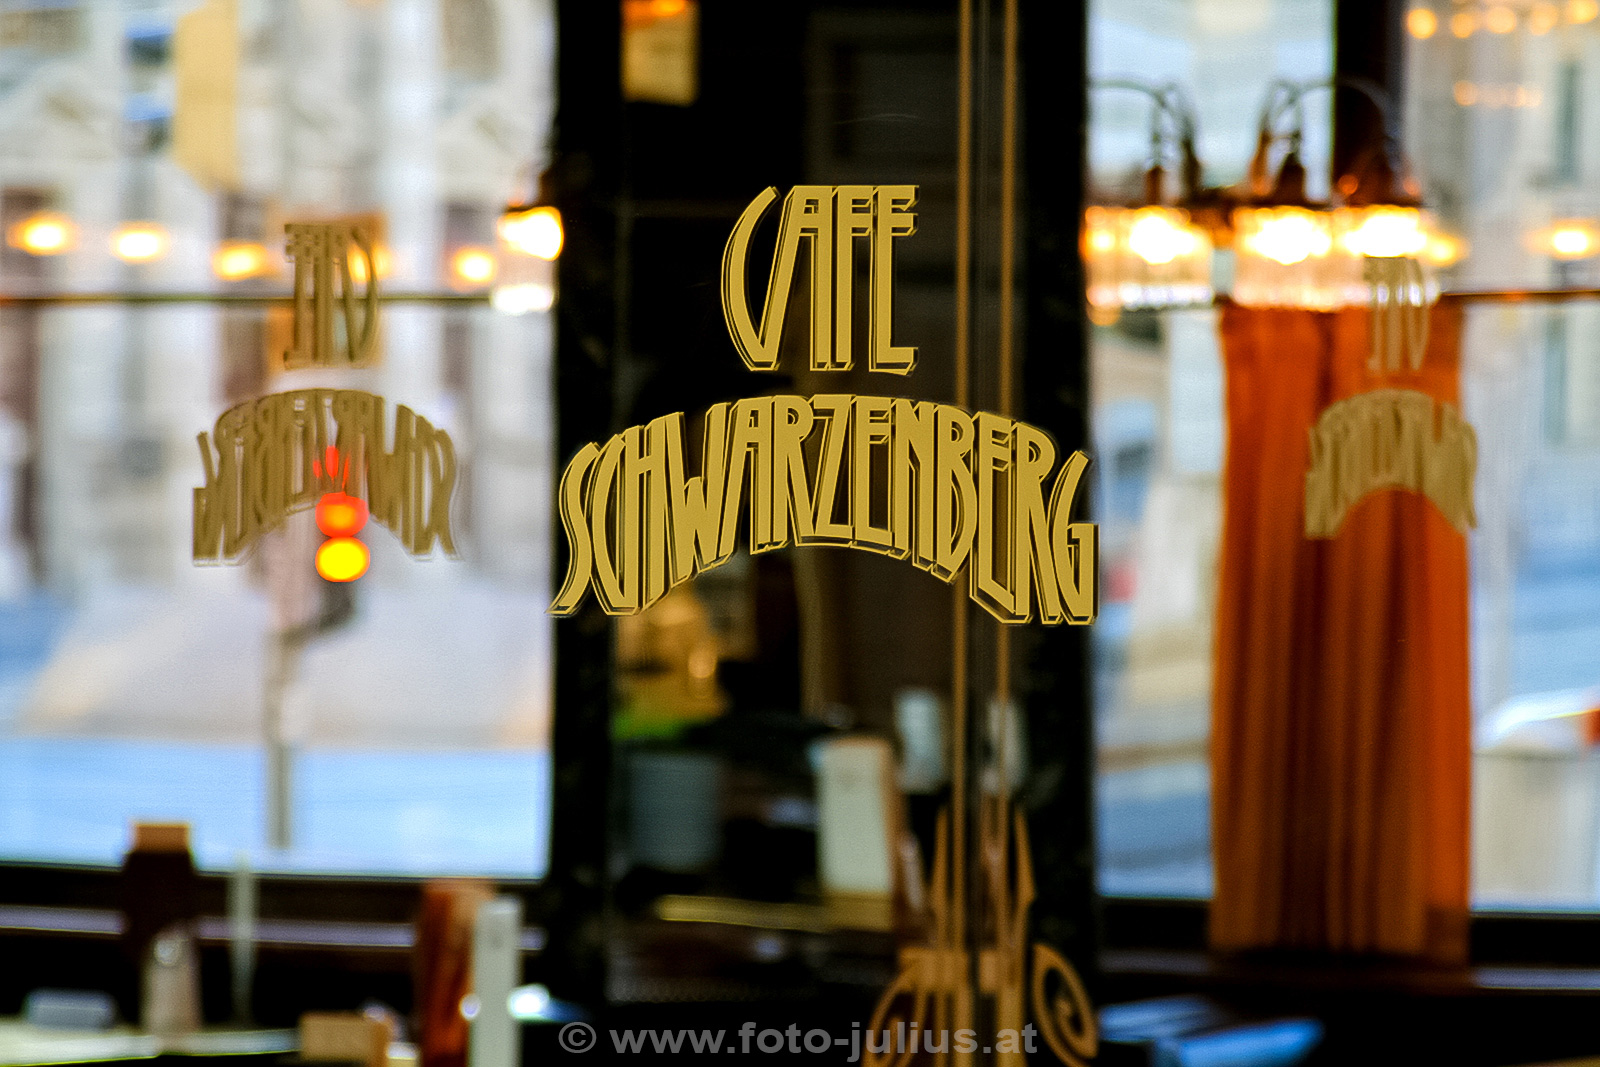 W2875a_Wien_Cafe_Schwarzenberg.jpg, 539kB